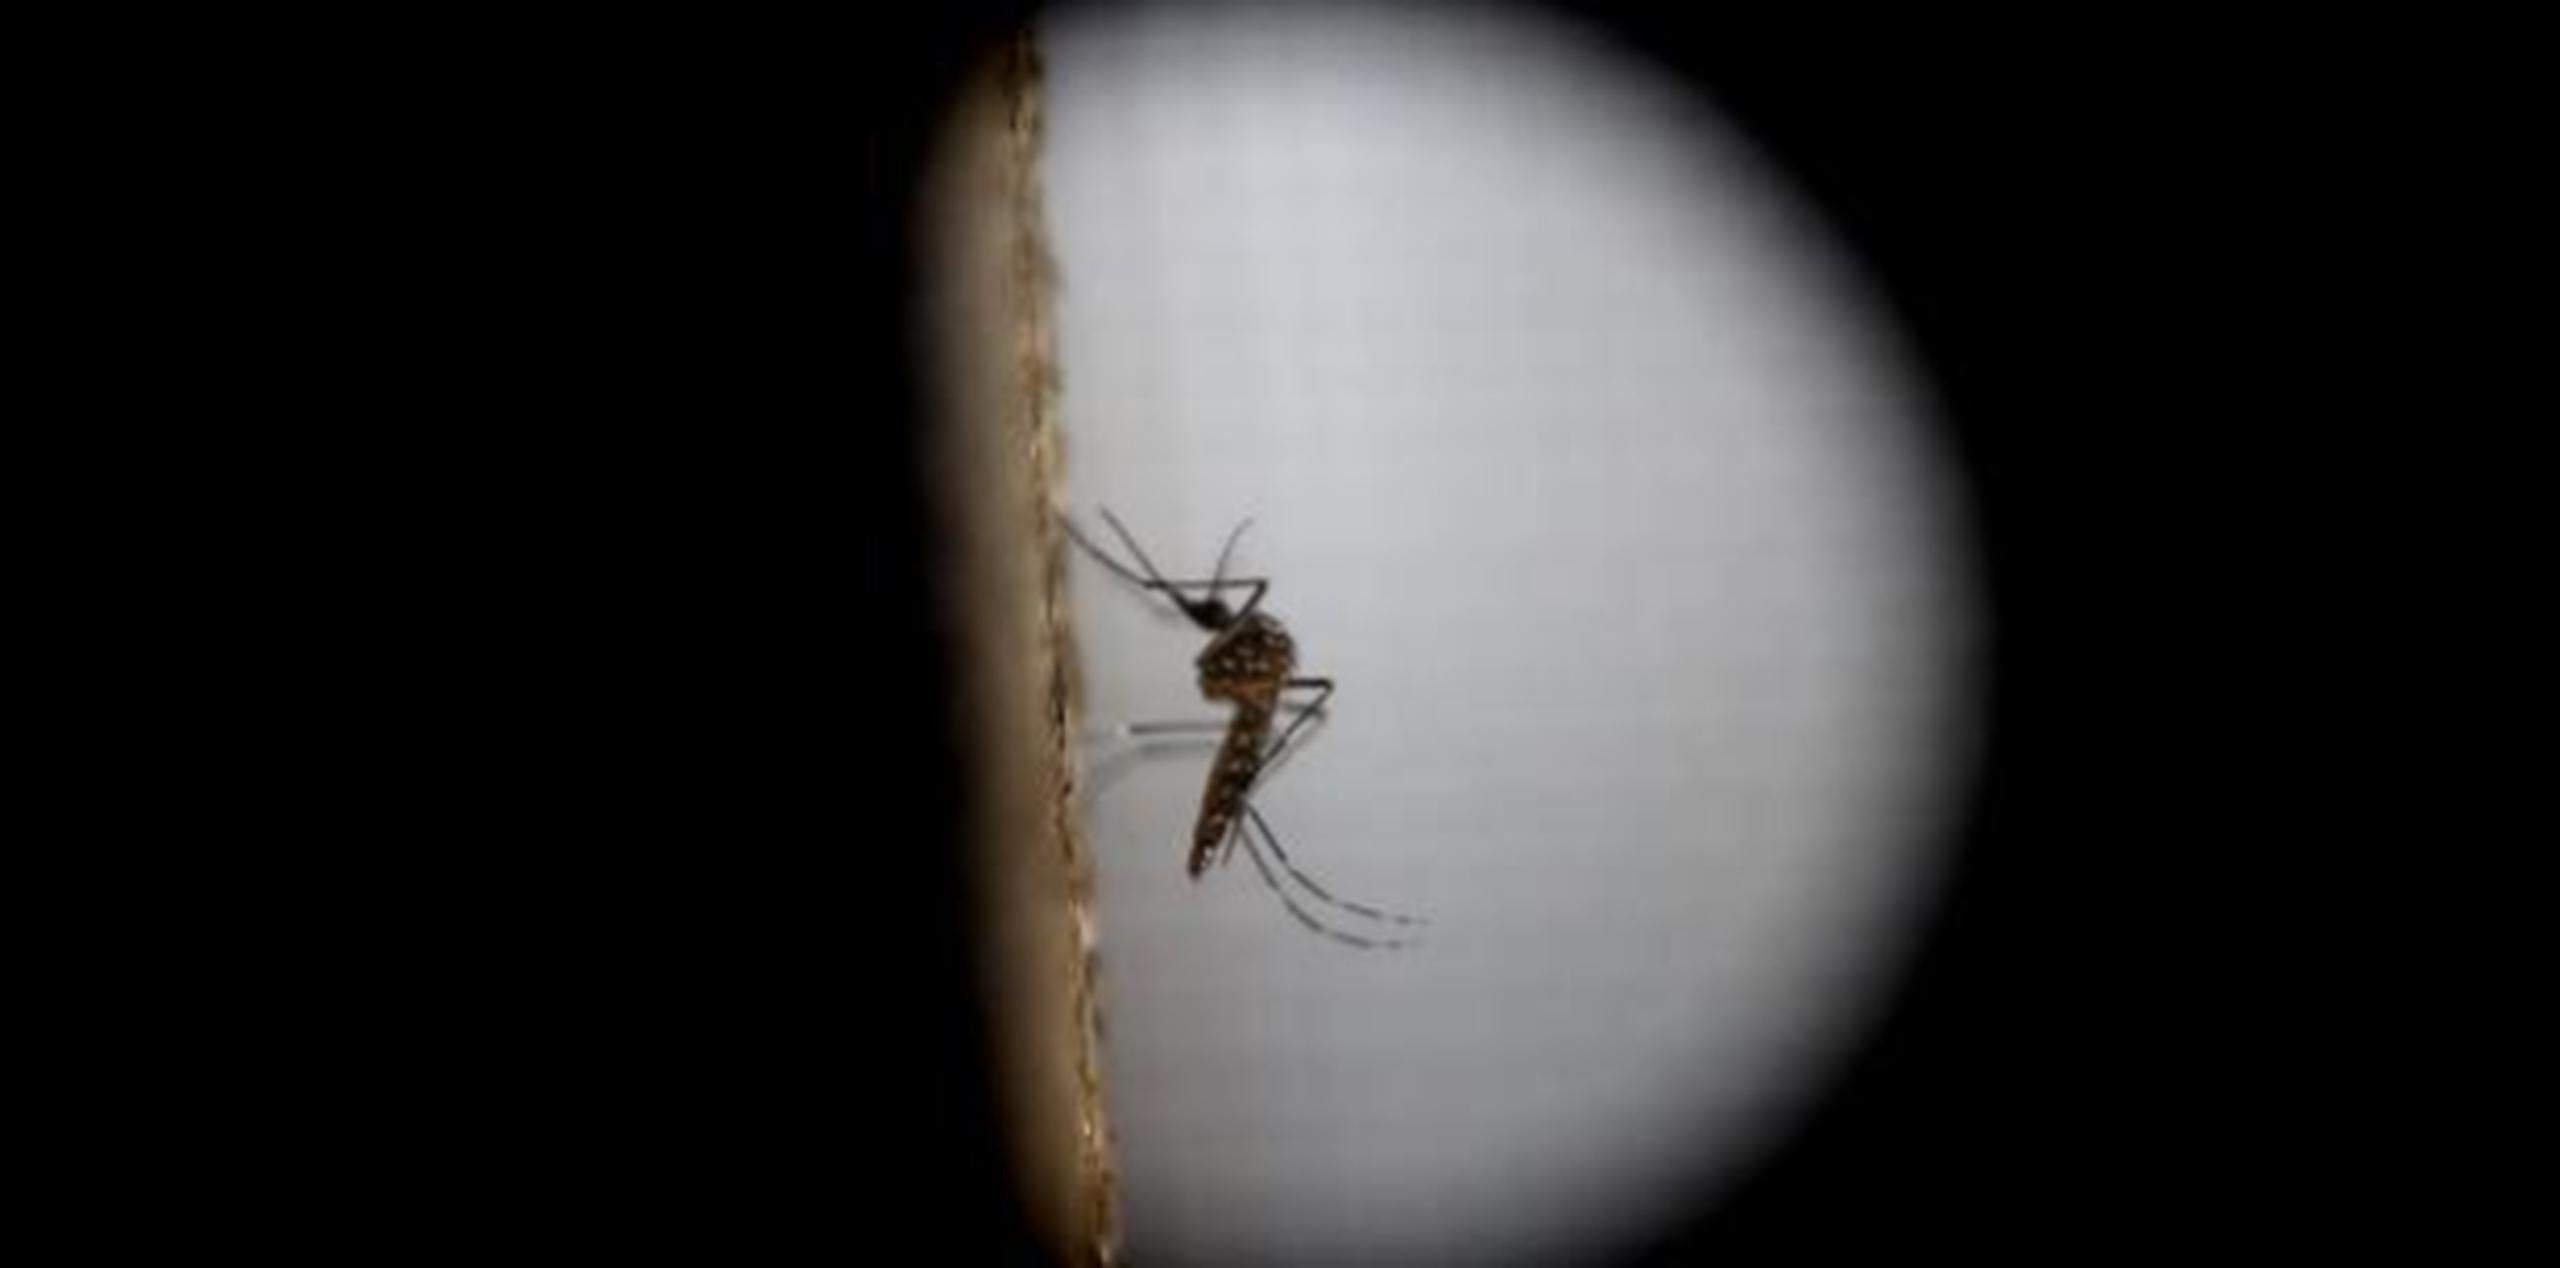 Según la empresa que produce los mosquitos transgénicos, los mismos al aparearse con las hembras producen crías que heredan un gen letal que les impide llegar a adultos. (Arcivo)